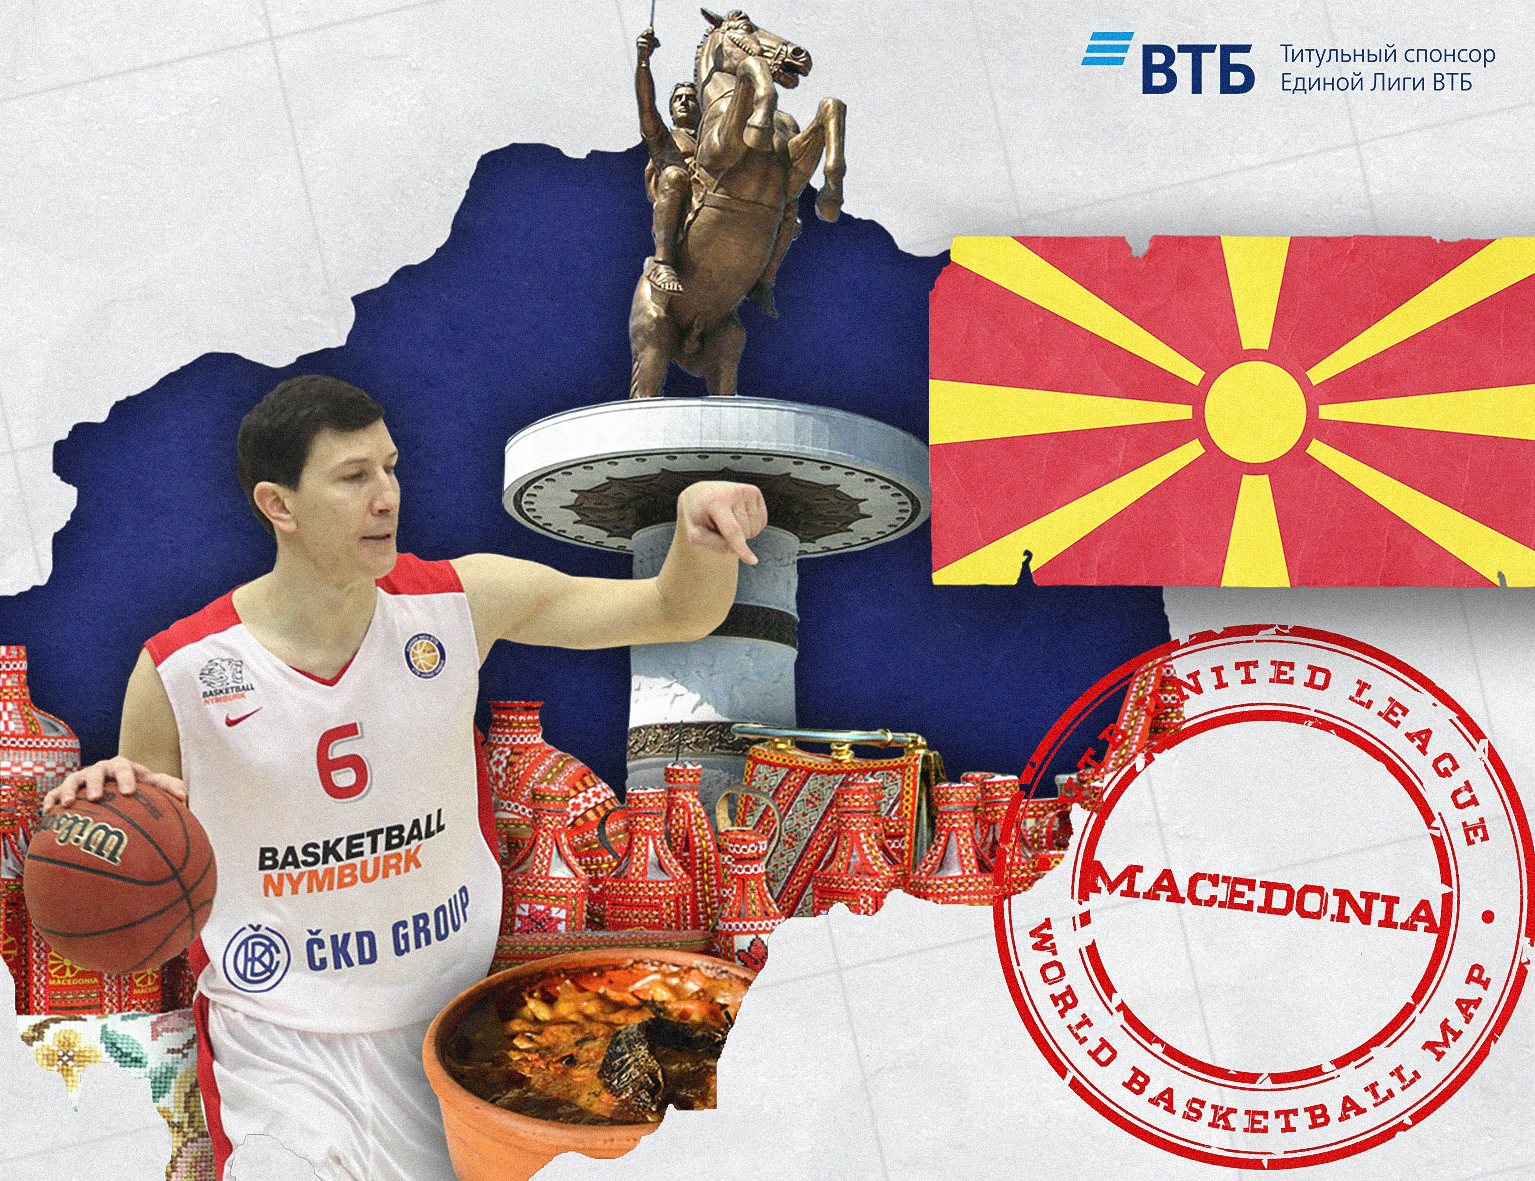 World basketball map: Macedonia